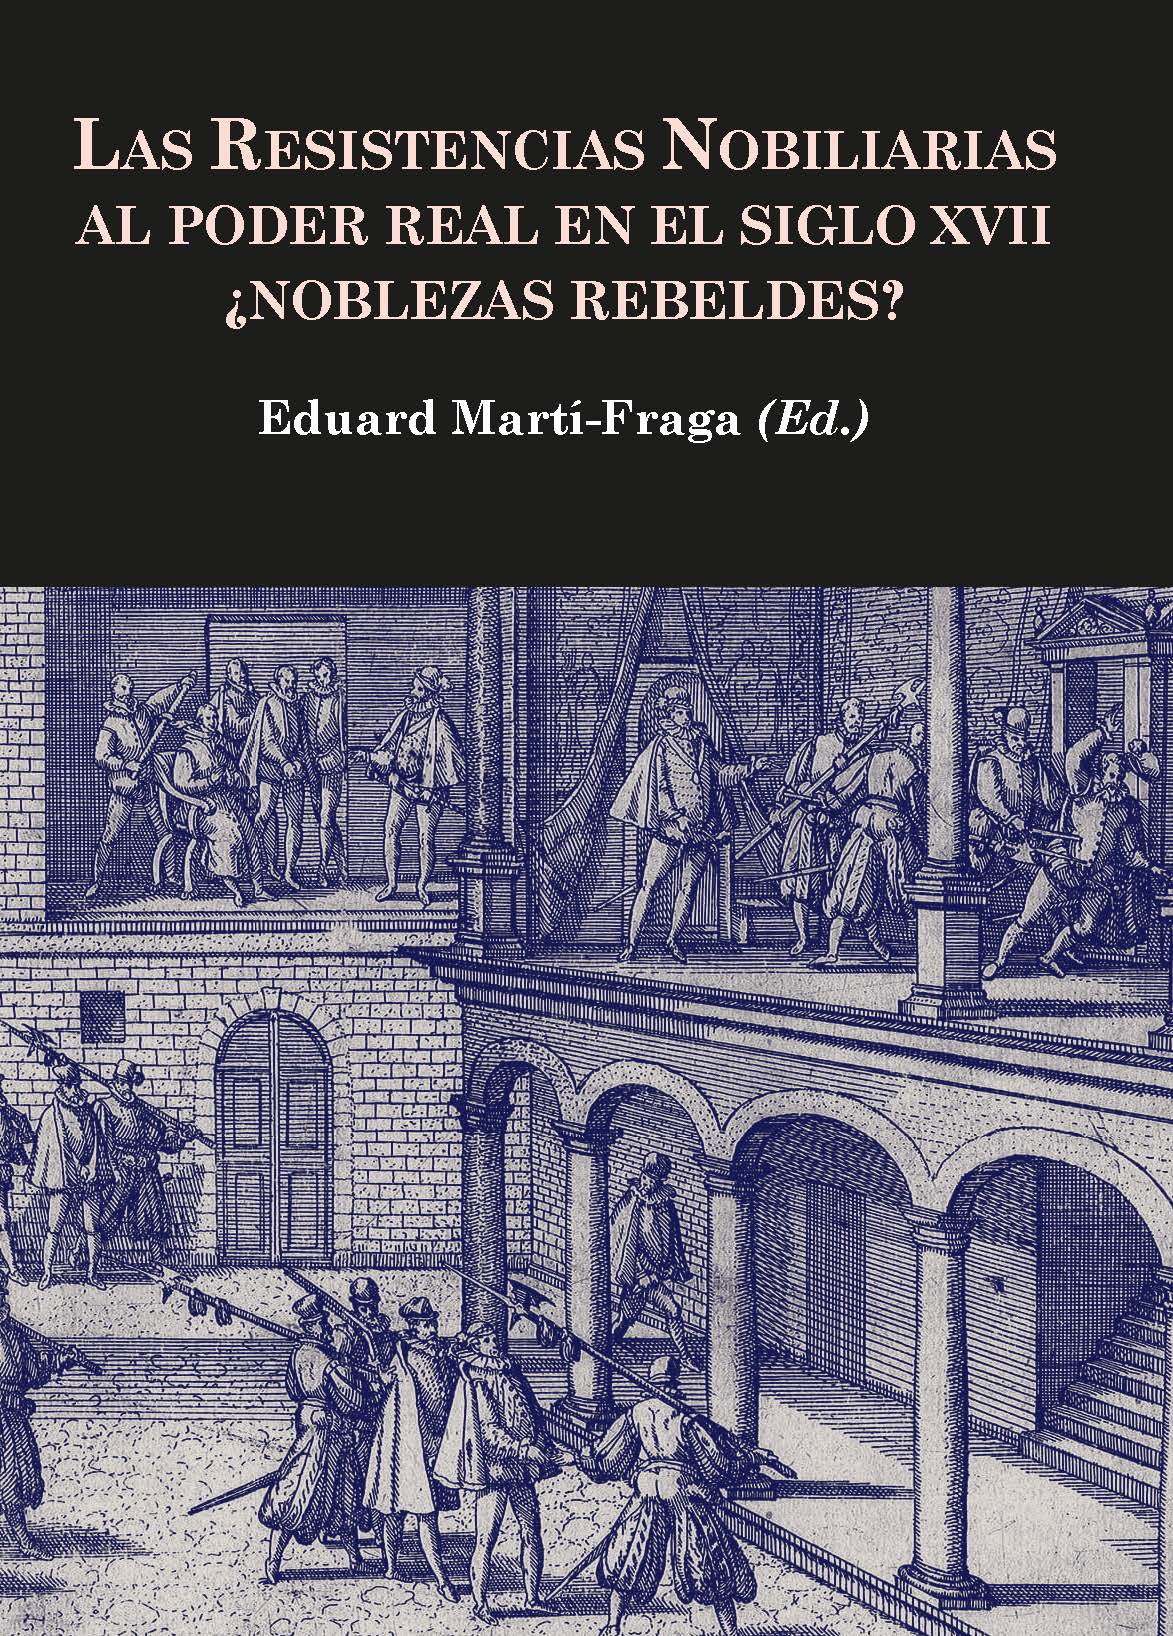 Las resistencias nobiliarias al poder real en el siglo XVII